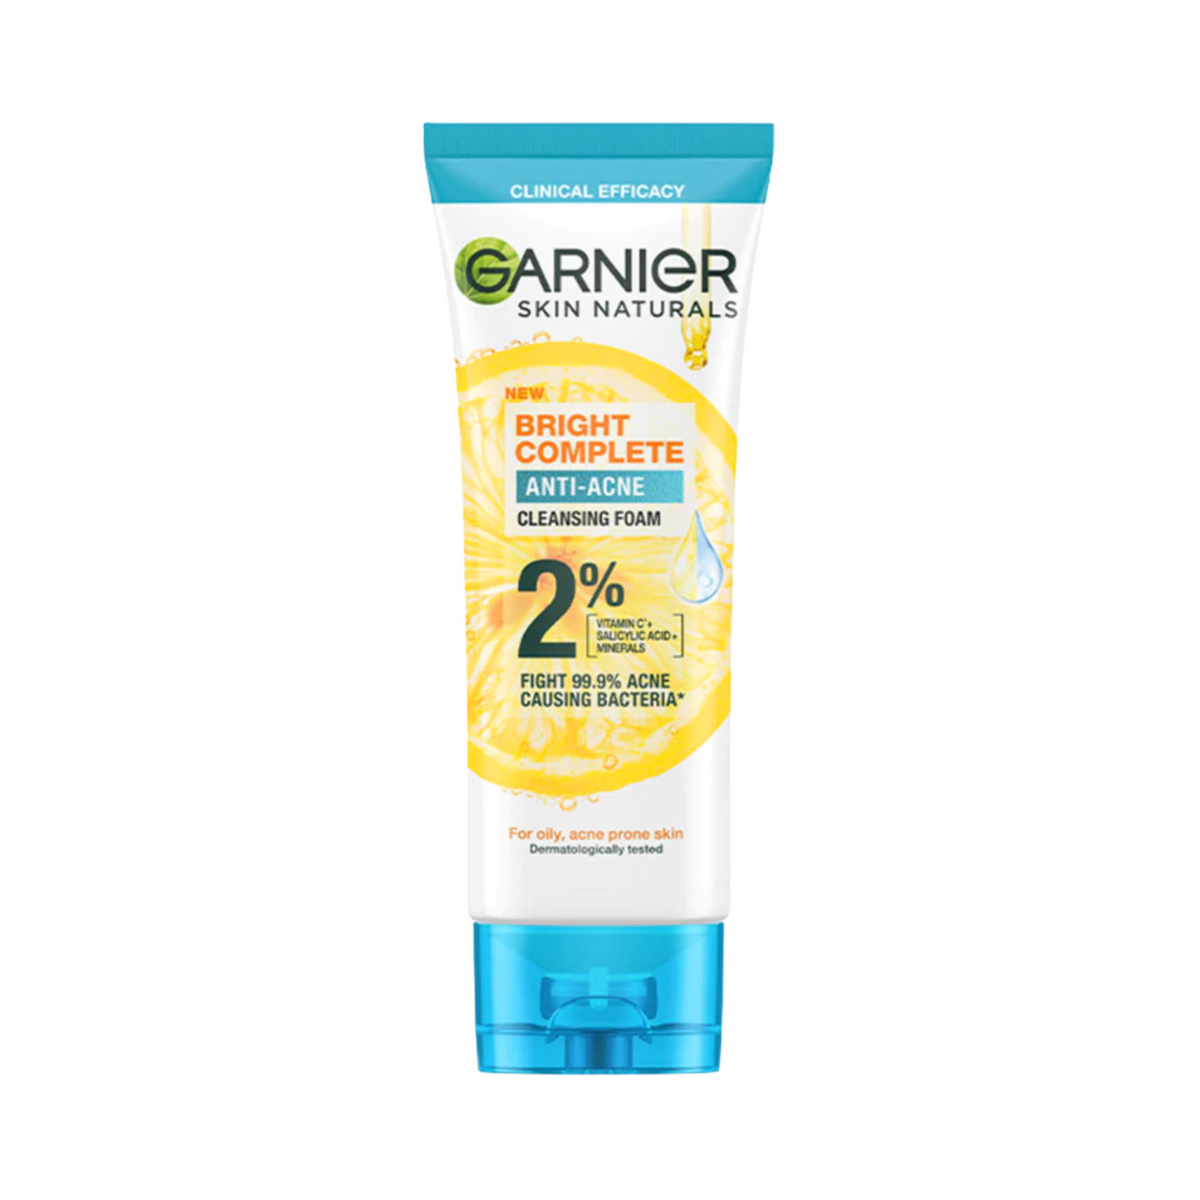 garnier-skin-naturals-bright-complete-anti-acne-cleansing-foam-100ml